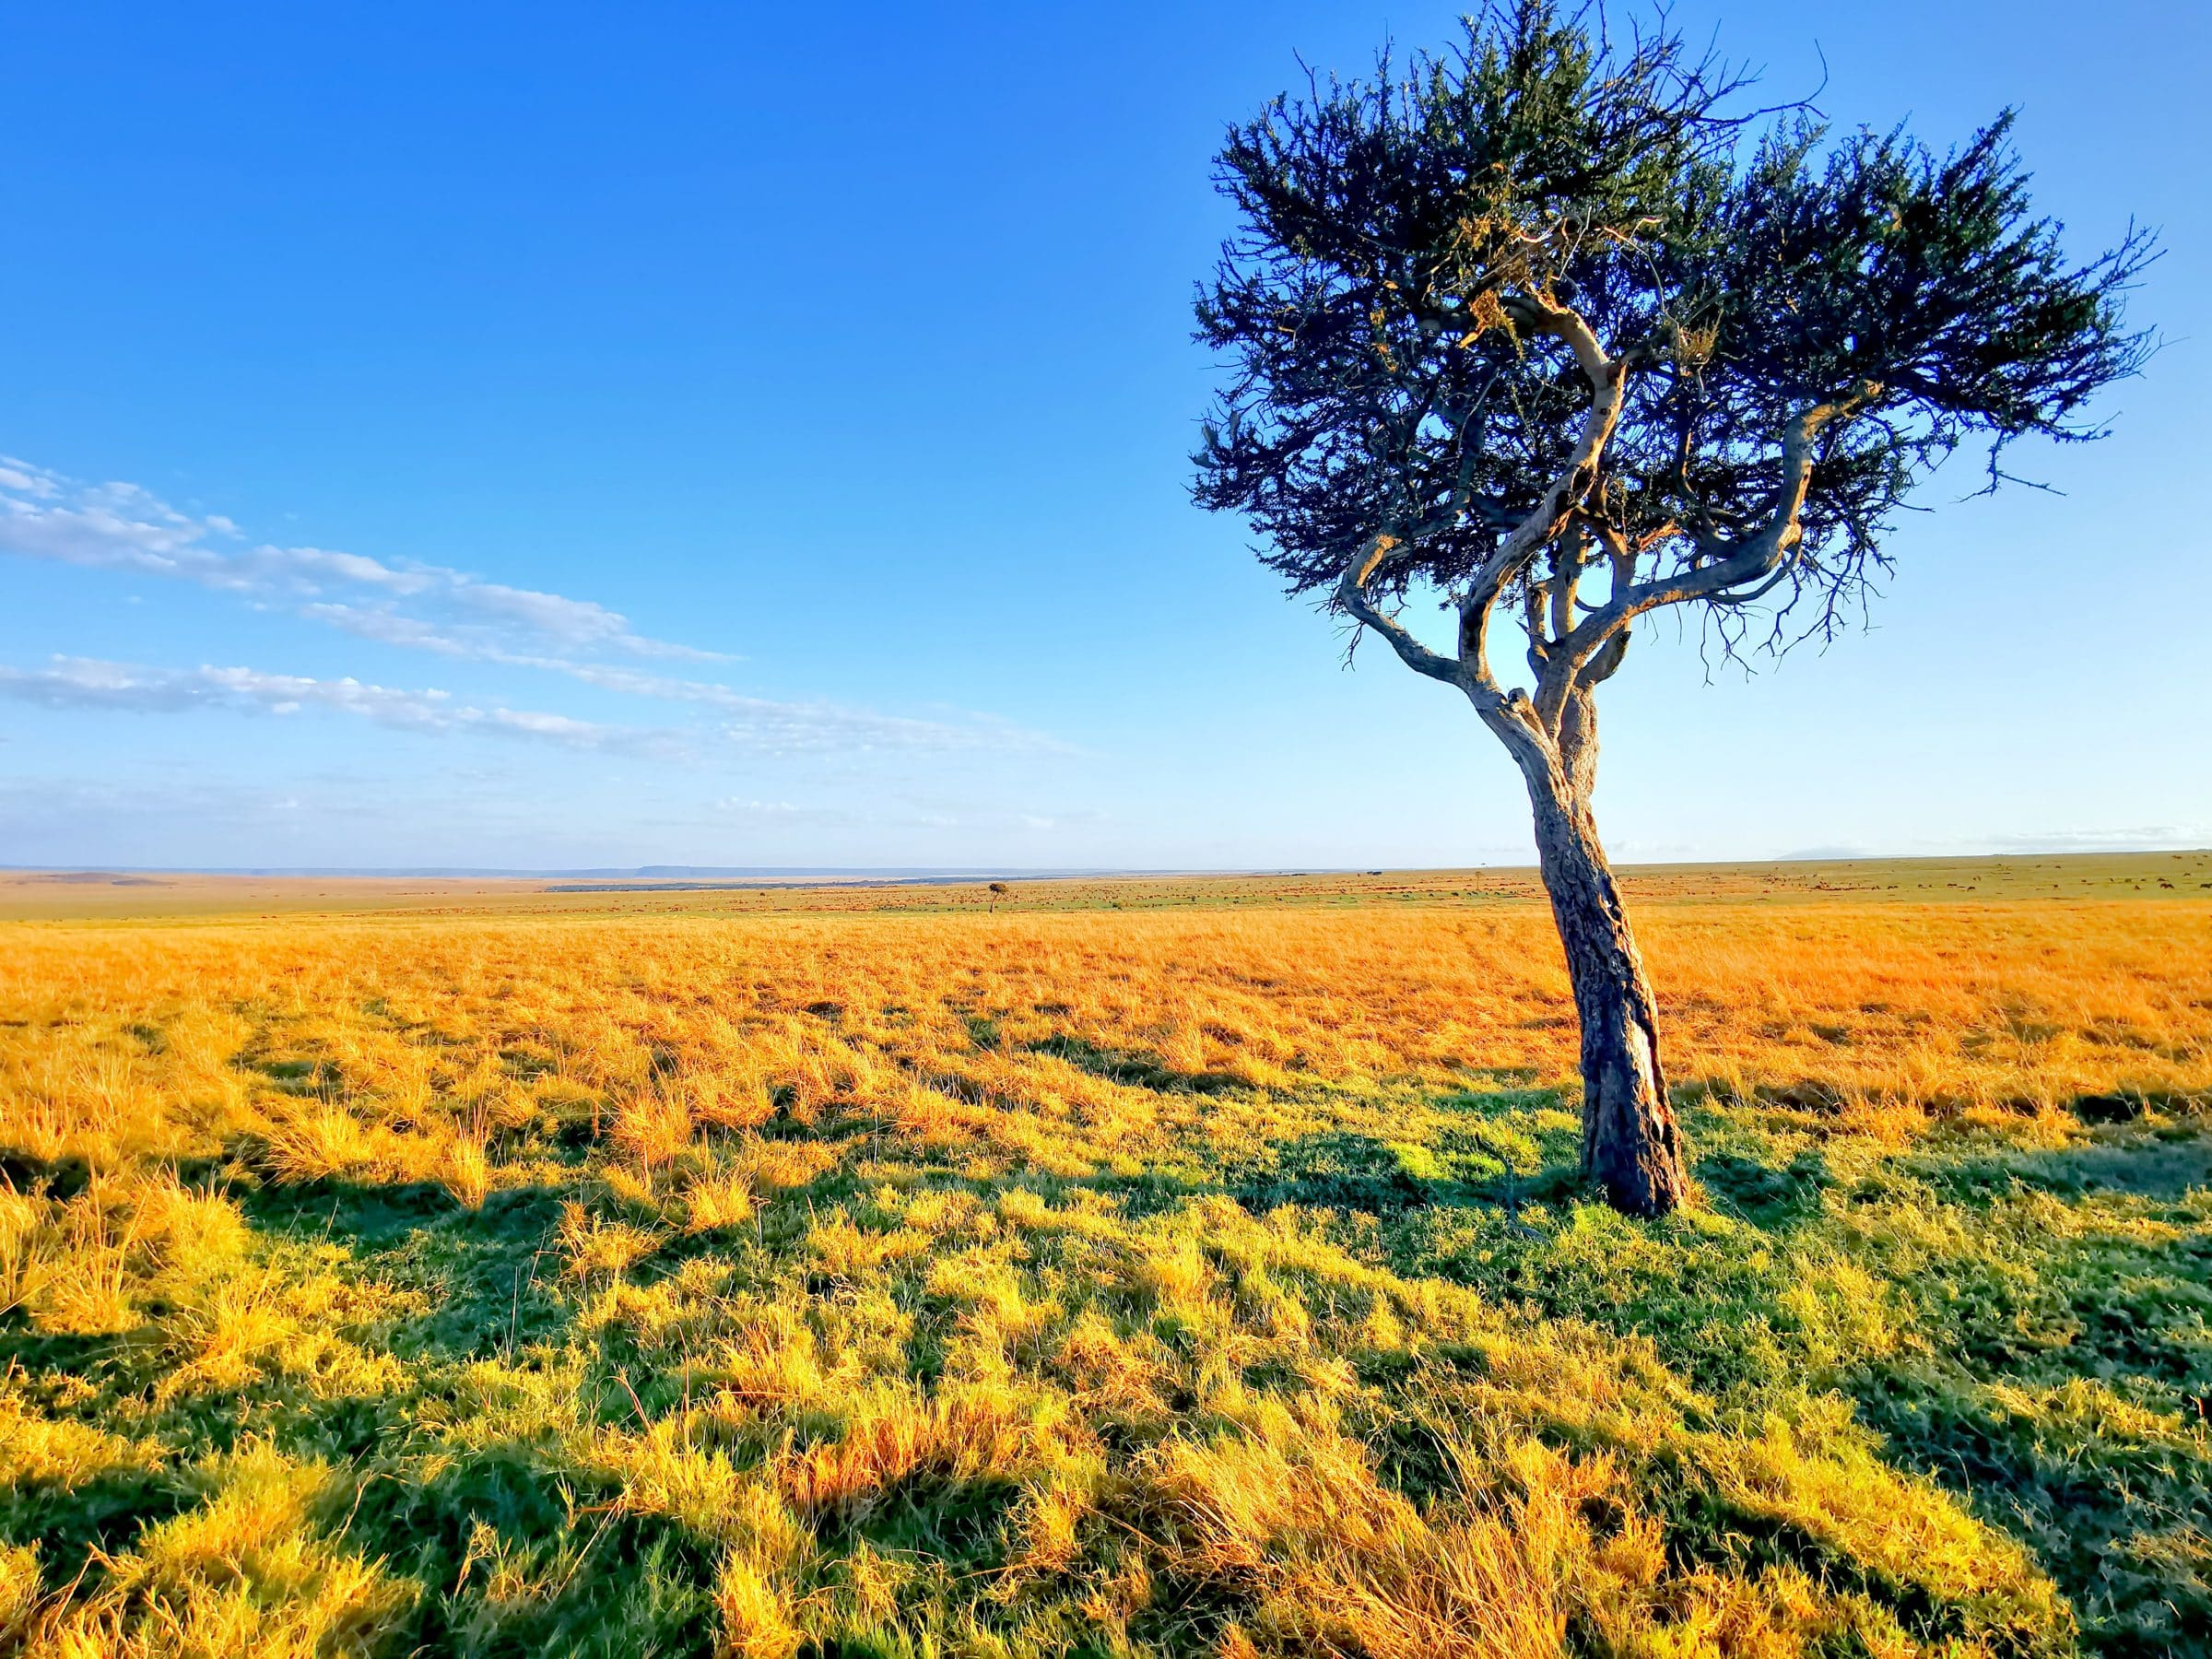 Grandes llanuras y un 'árbol perdido'. Esta es la imagen que ves a menudo en Masai Mara y Serengeti